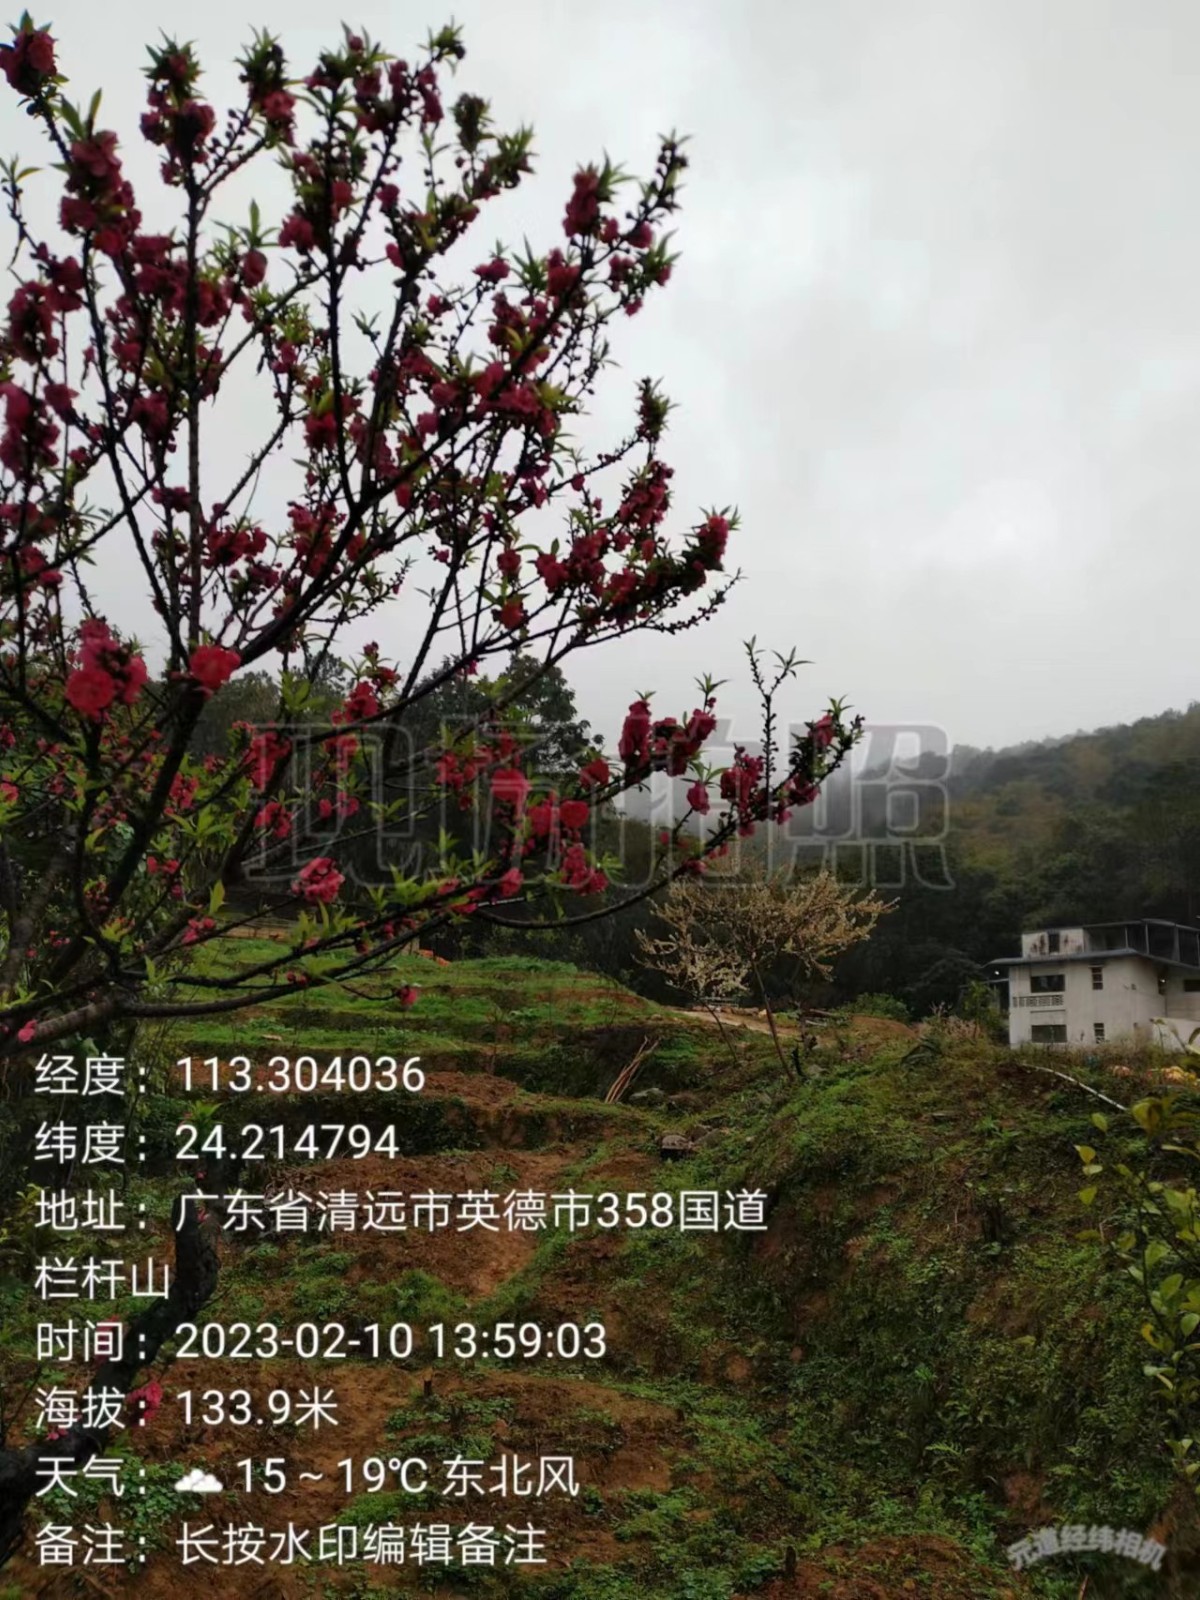 胡元山种植场（Cs114）：依托生态文明驿站，打造多产融合基地1.jpg